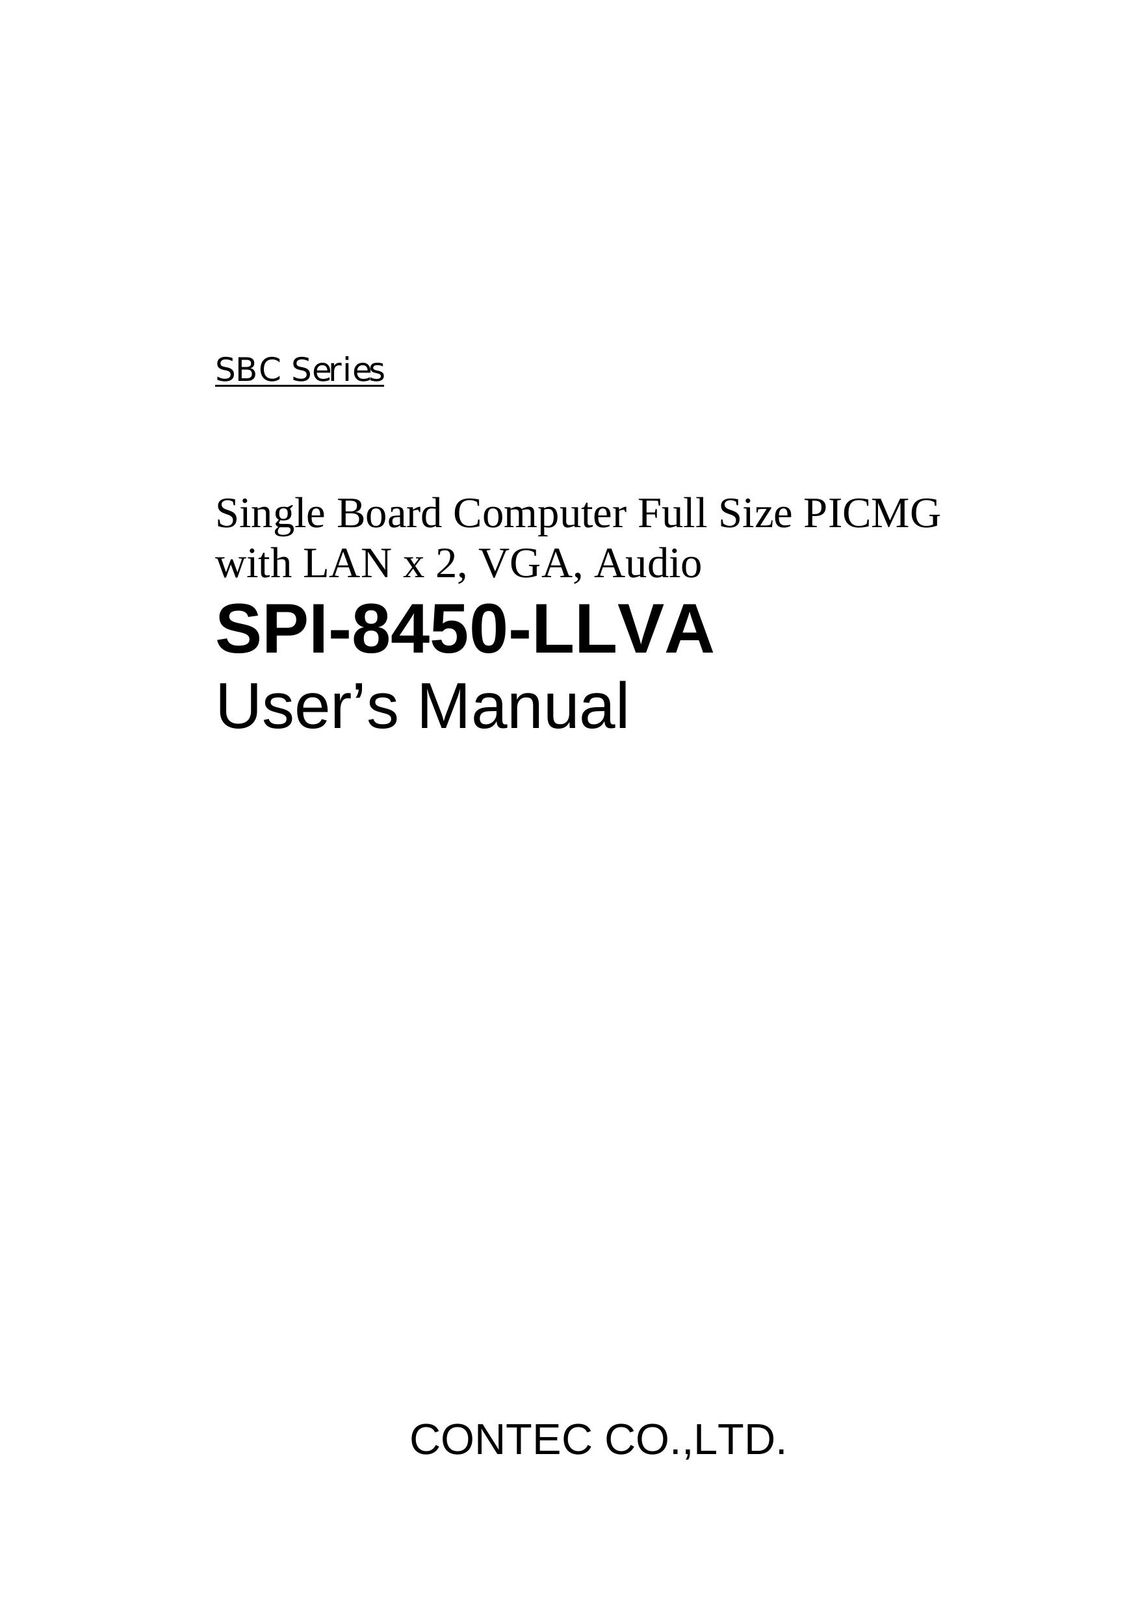 Contec SPI-8450-LLVA Computer Hardware User Manual